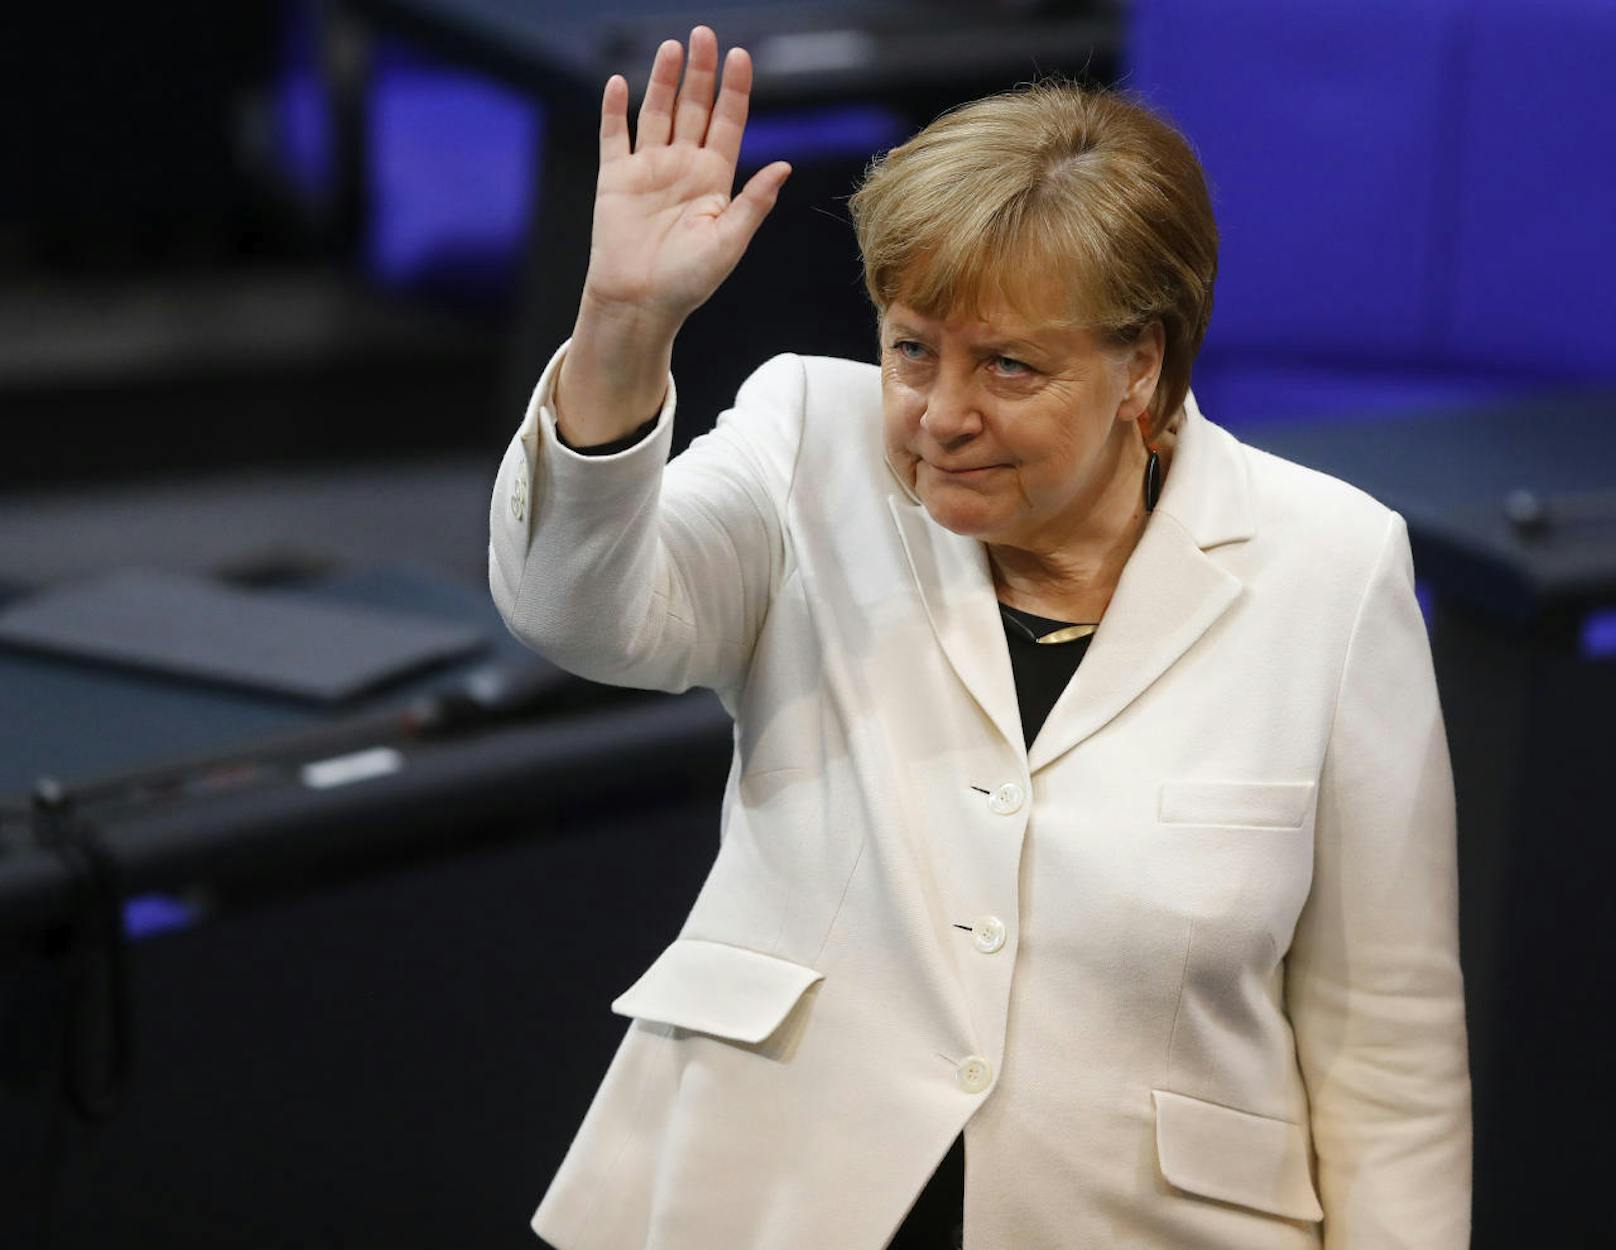 Die deutsche Bundeskanzlerin Angela Merkel hat sich für ein Ausreiseverbot ausgesprochen, sollte es zu lokalen Corona-Ausbrüchen kommen.